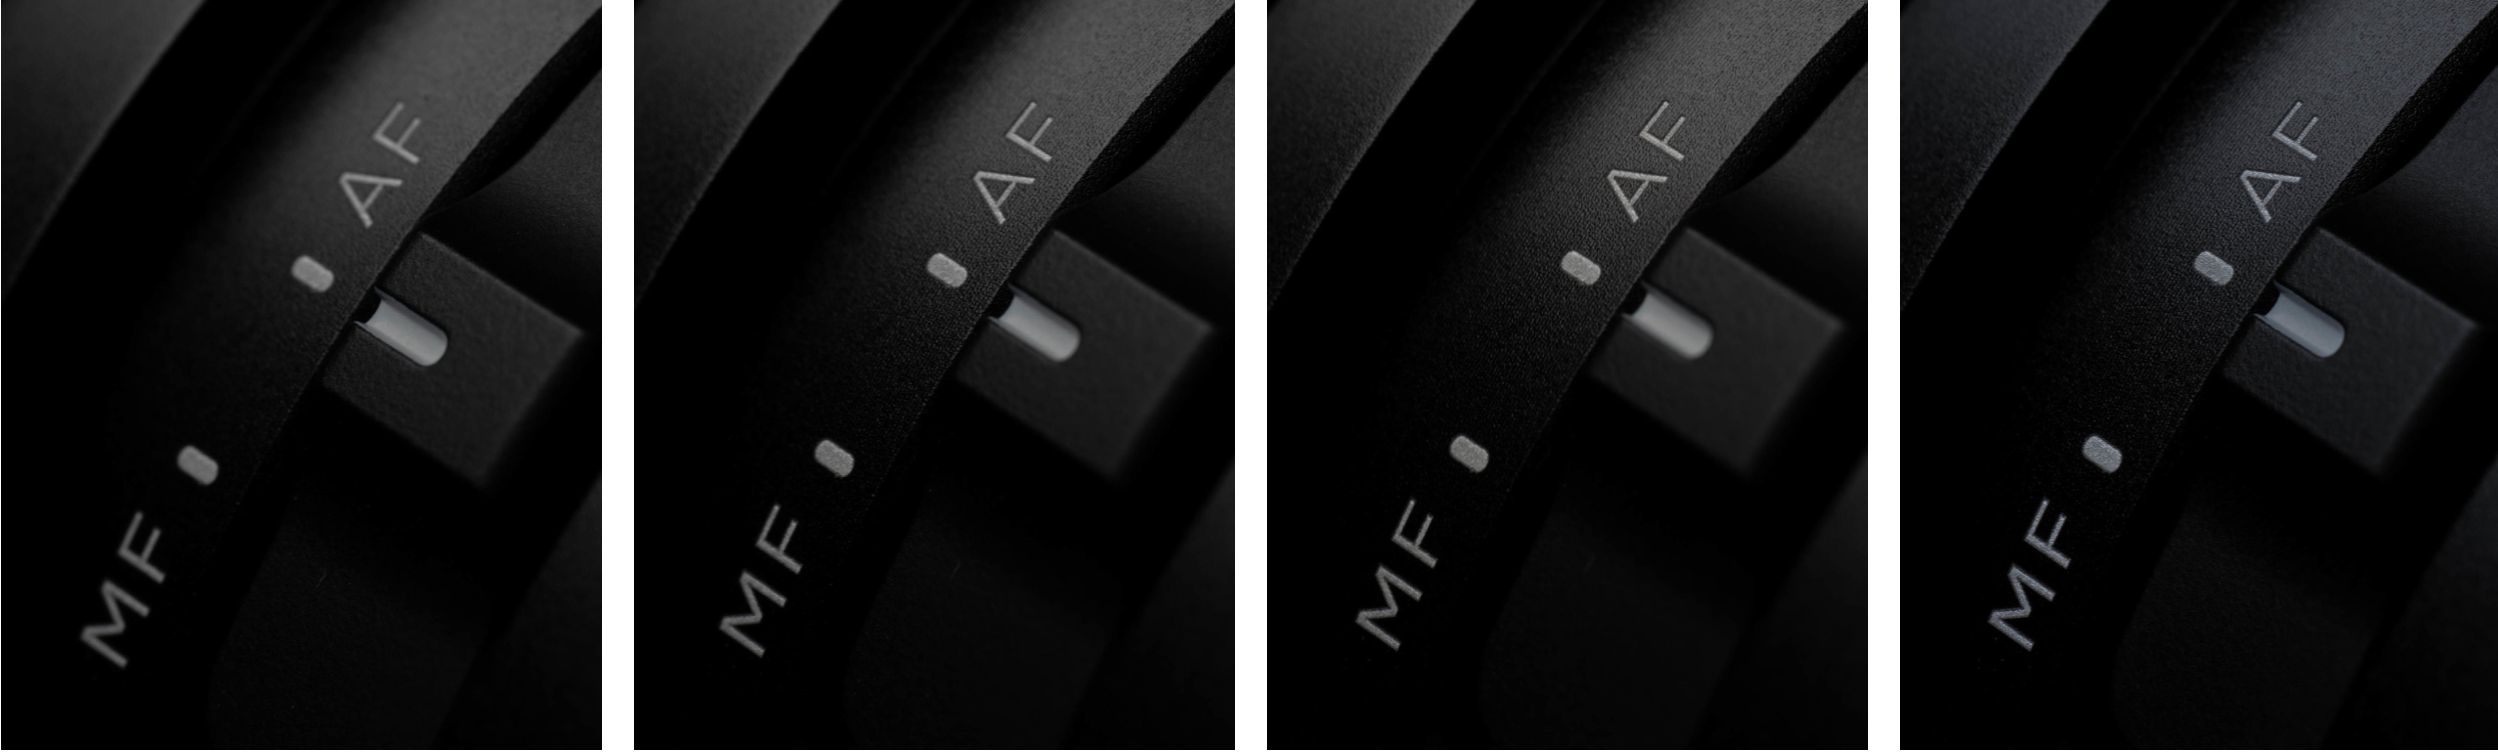 Bilder 1-3 (links nach rechts): 105mm F2,8 DG DN Marco | A – ISO 100 – F11 – 1/10s. 
Bild 4: Fokus-Stacking aus 3 Aufnahmen